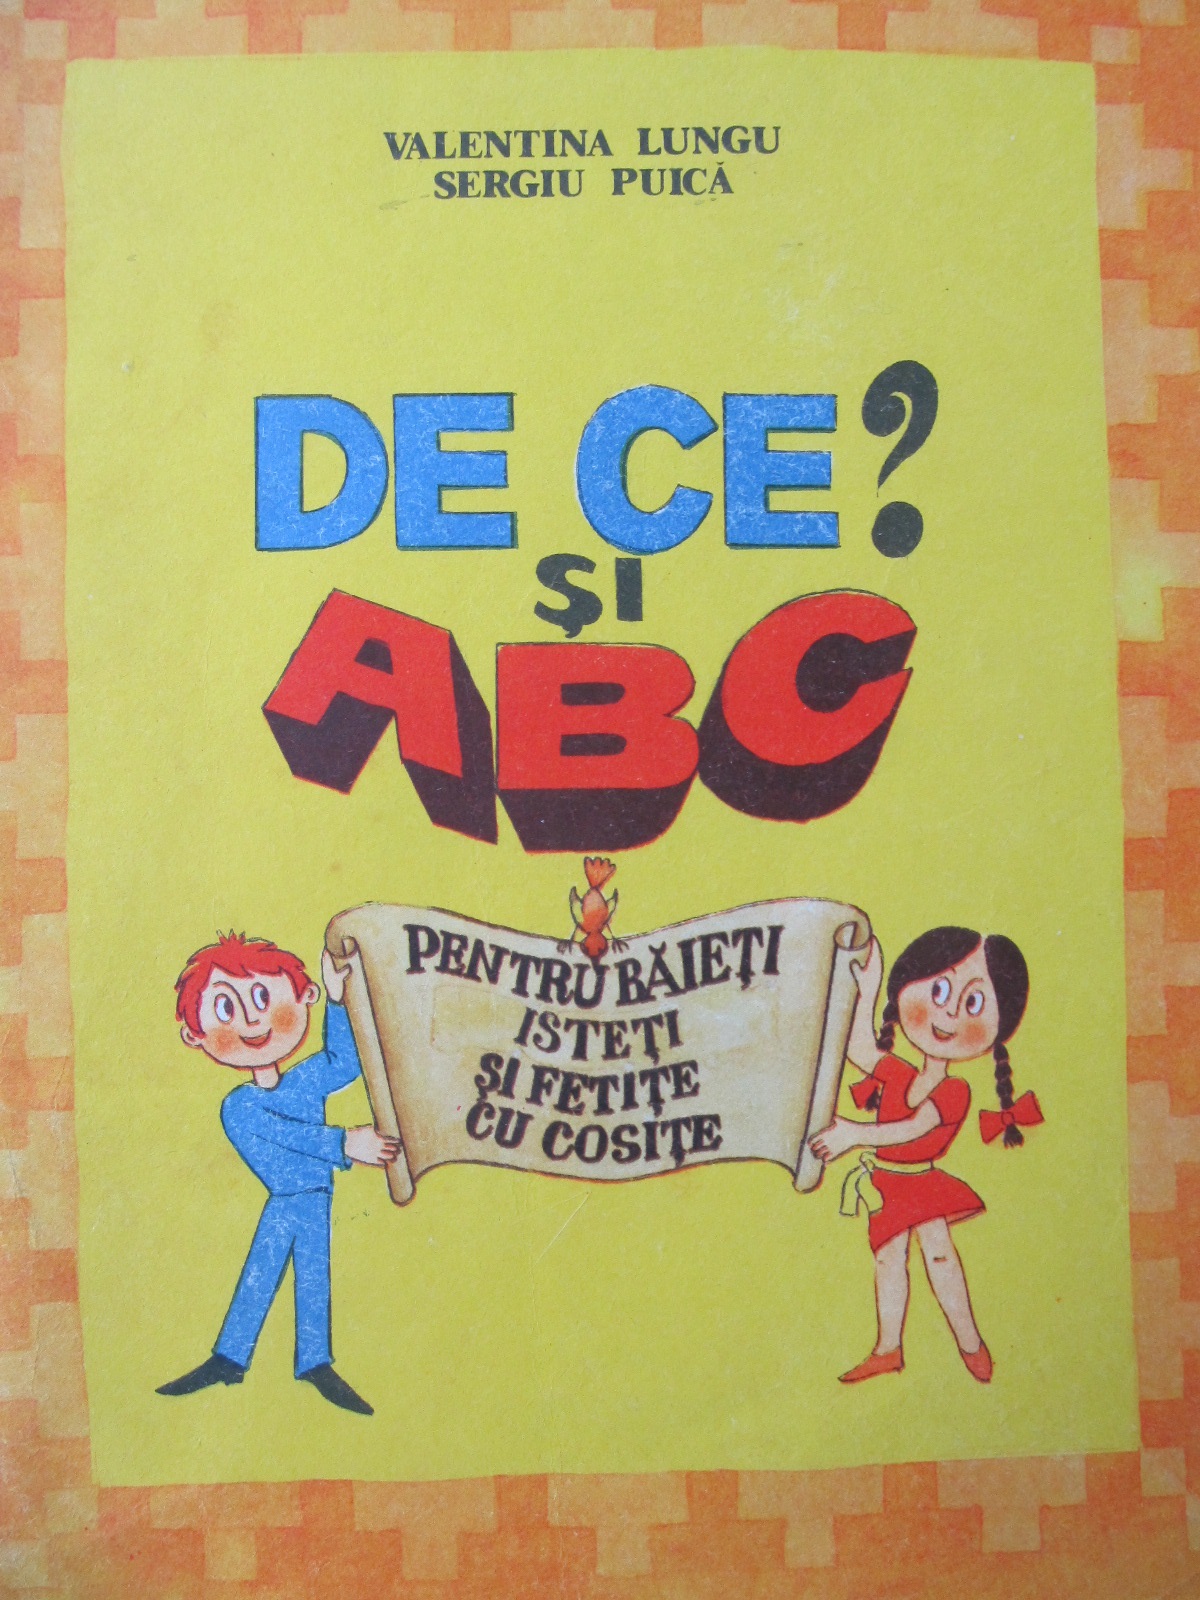 De ce si ABC - pentru  baieti isteti si fetite cu cosite - Valentina Lungu , Sergiu Puica | Detalii carte